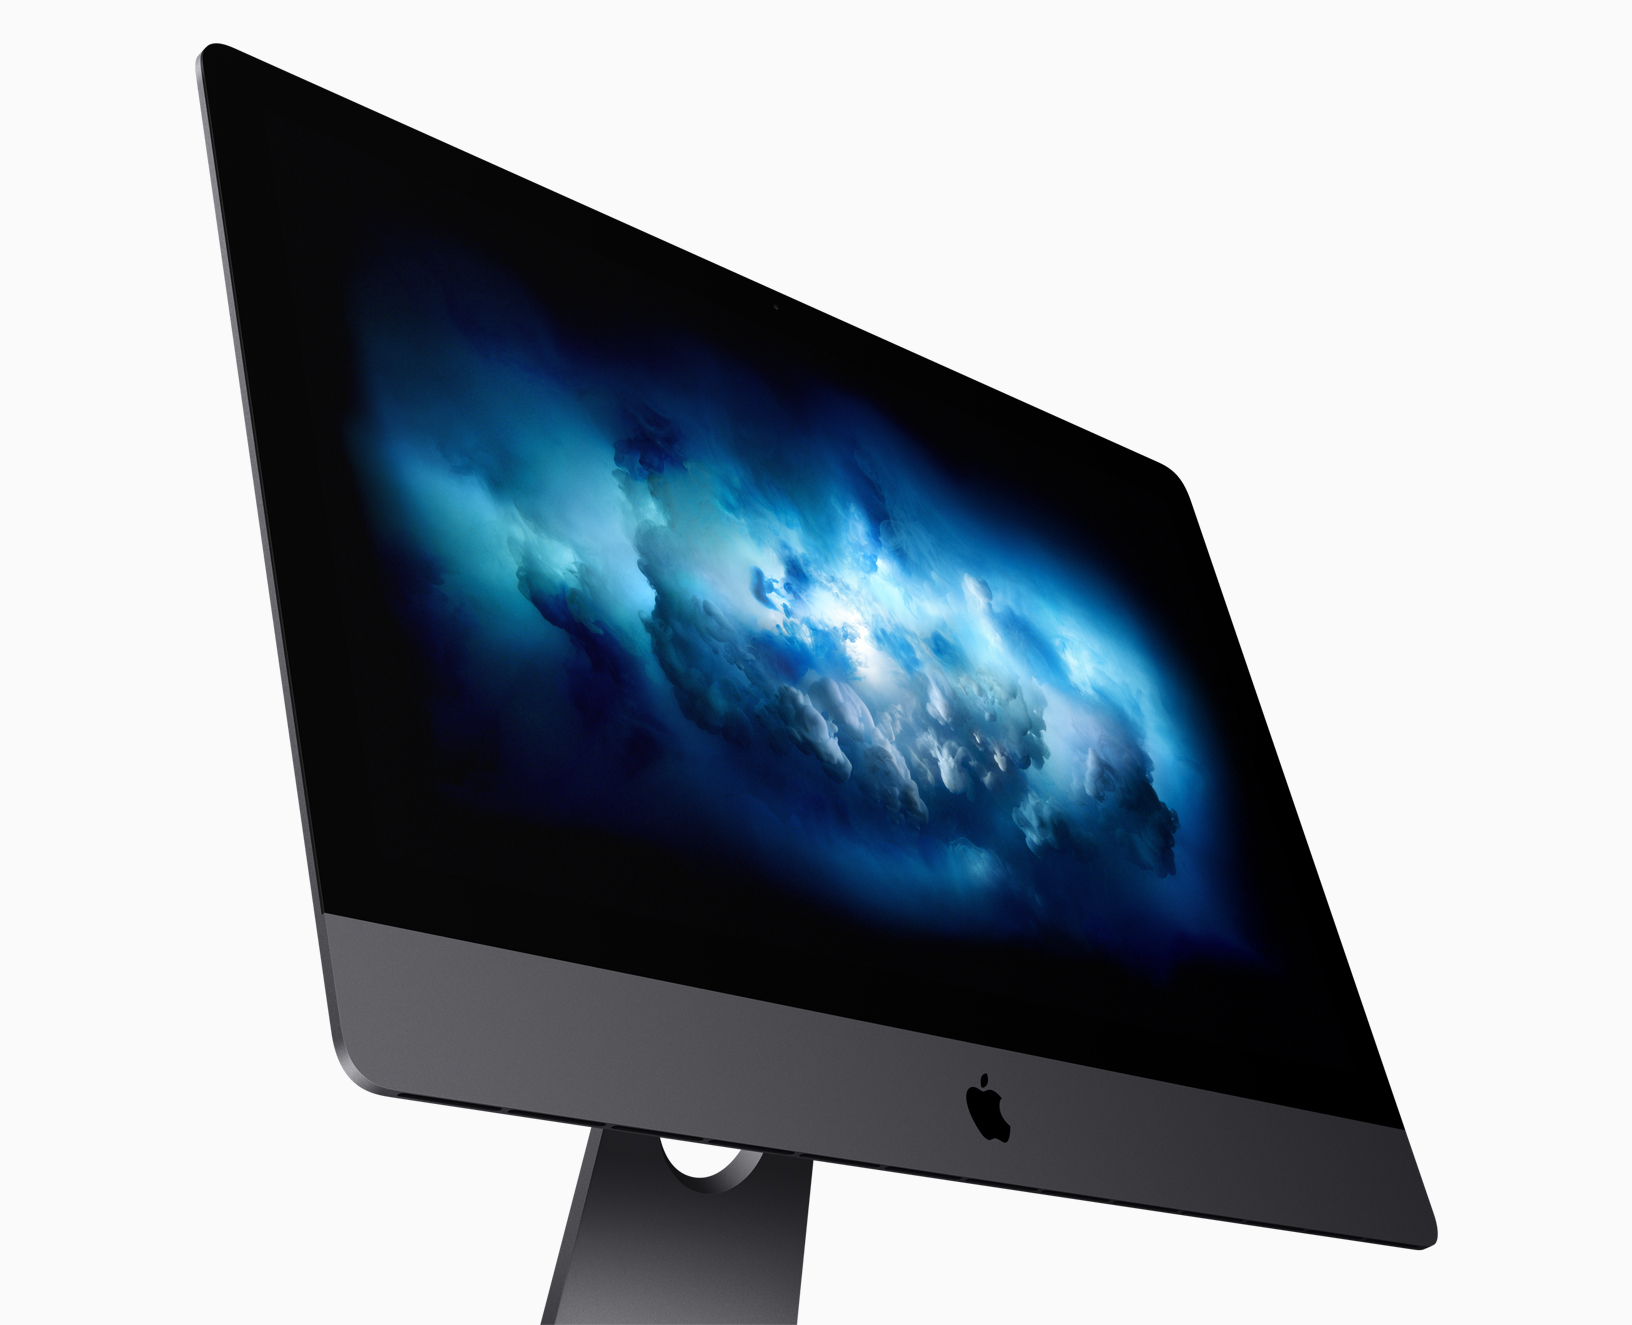 Immagine pubblicata in relazione al seguente contenuto: Apple lancia il nuovo iMac Pro con CPU Xeon, GPU Vega e display Retina 5K | Nome immagine: news27539_Apple-Mac-Pro_1.jpg